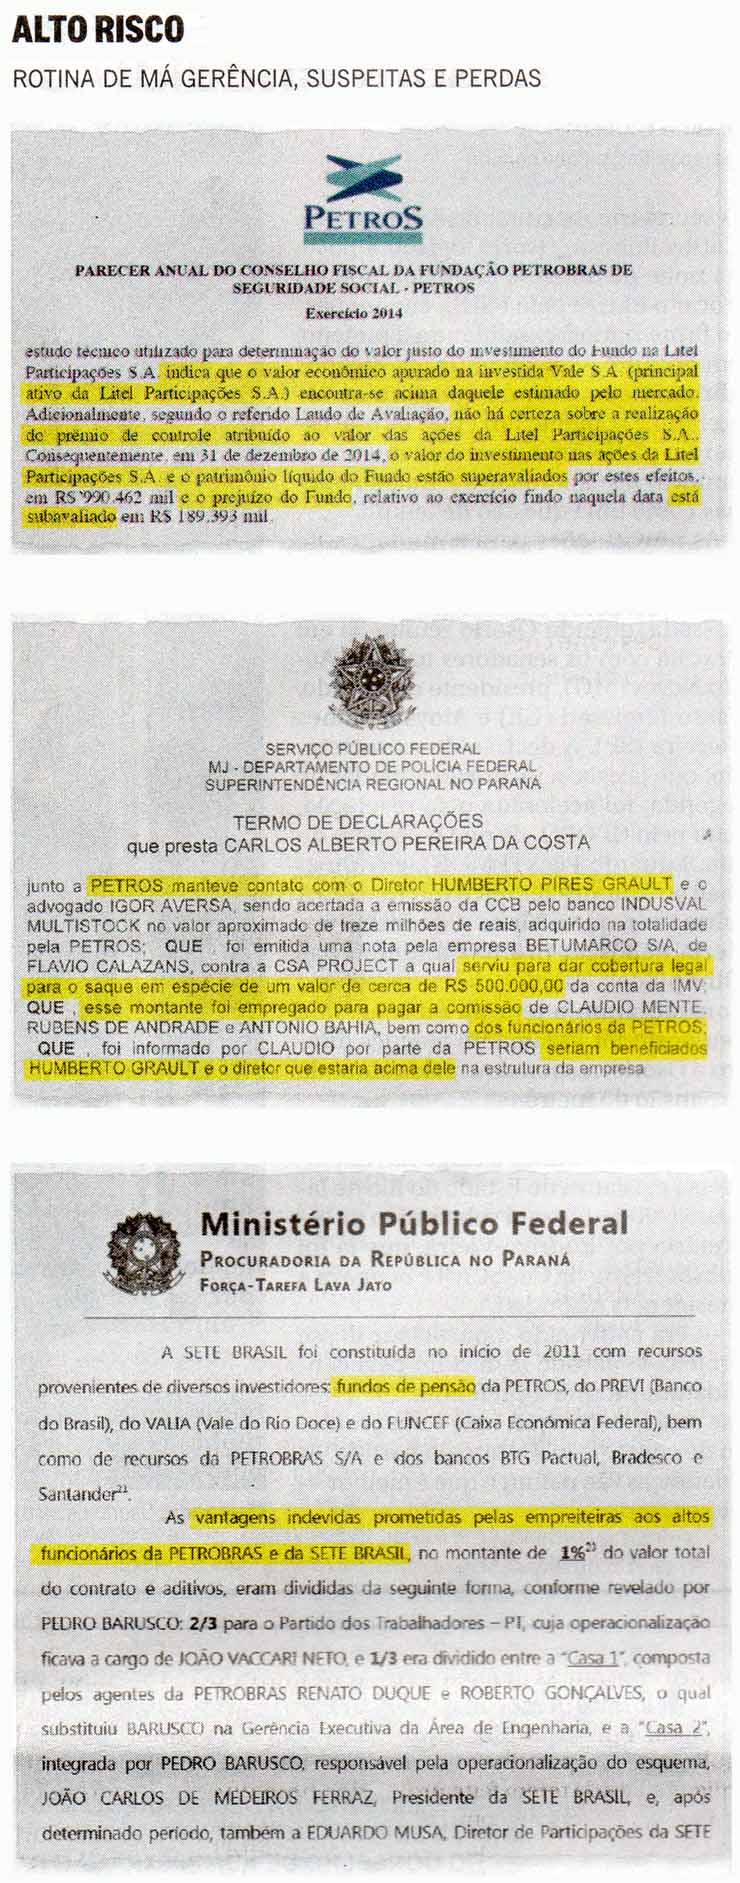 O Globo - 22/02/16 - Alto Risco: Rotina de mgerncia, suspeitas e perdas